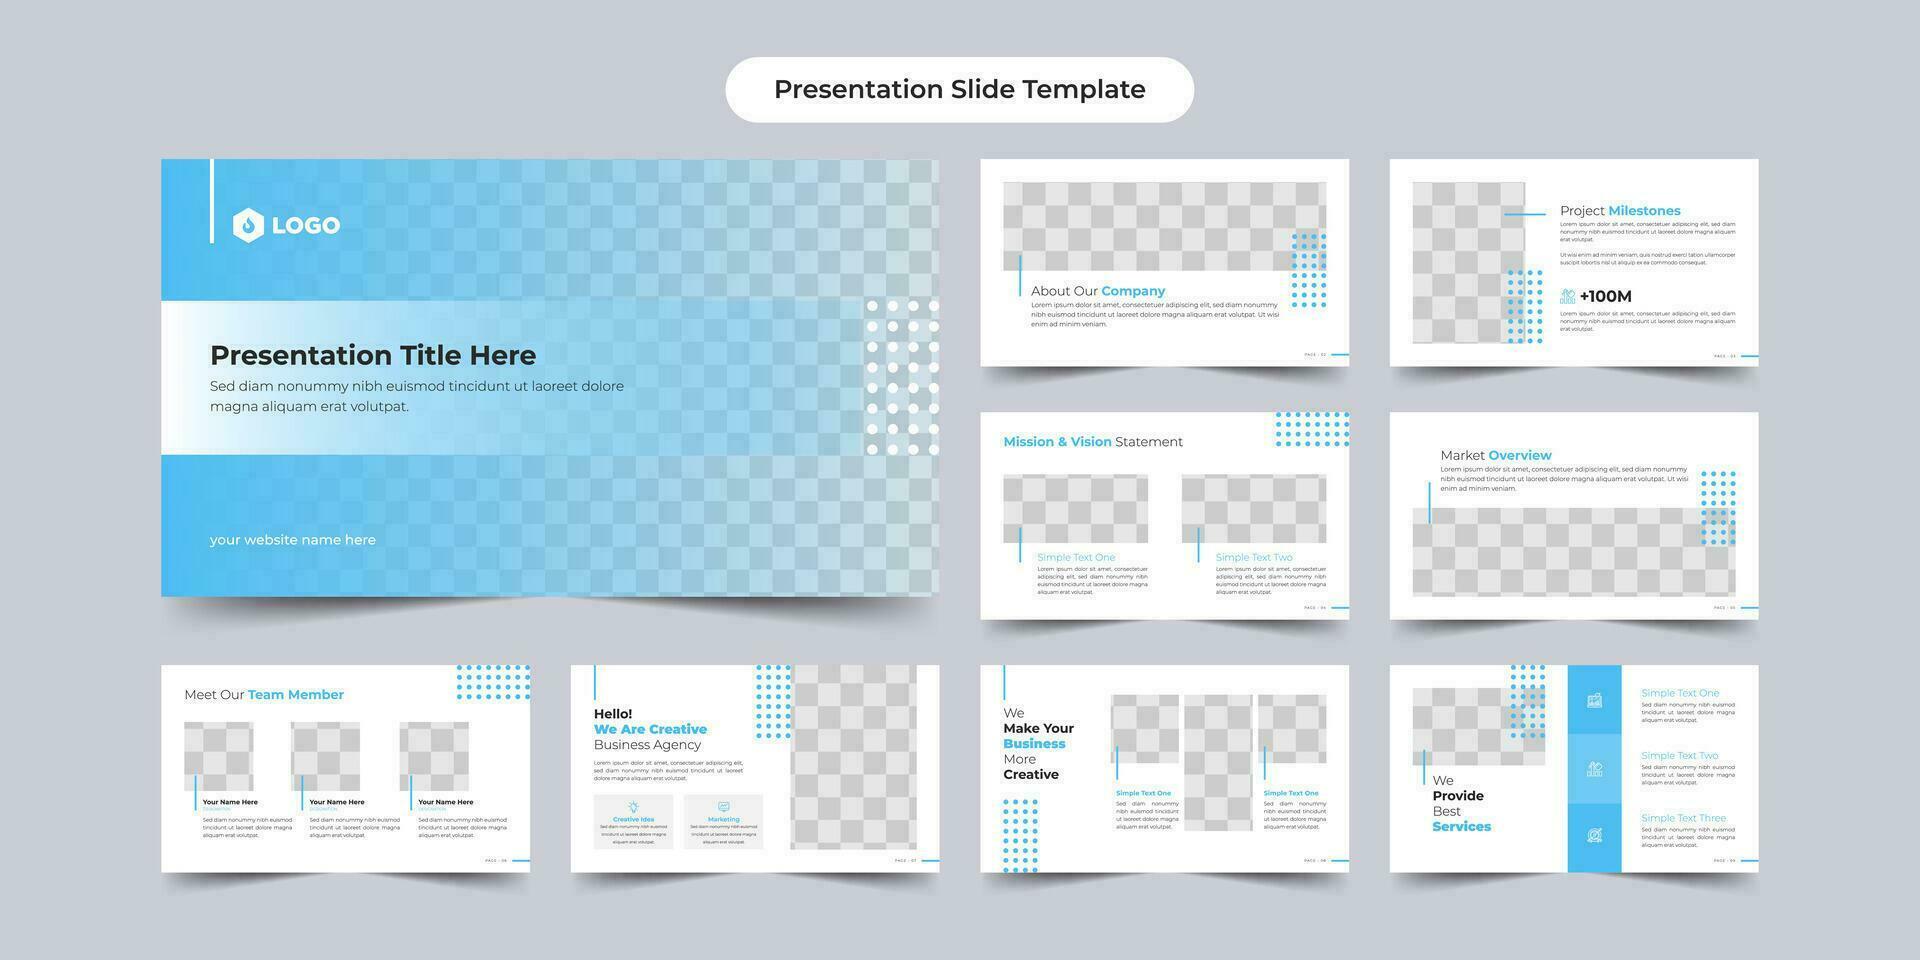 kreativa presentationsbilder malldesign. använd för modern presentationsbakgrund, broschyrdesign, skjutreglage för webbplatsen, målsida, årsredovisning, företagsprofil vektor